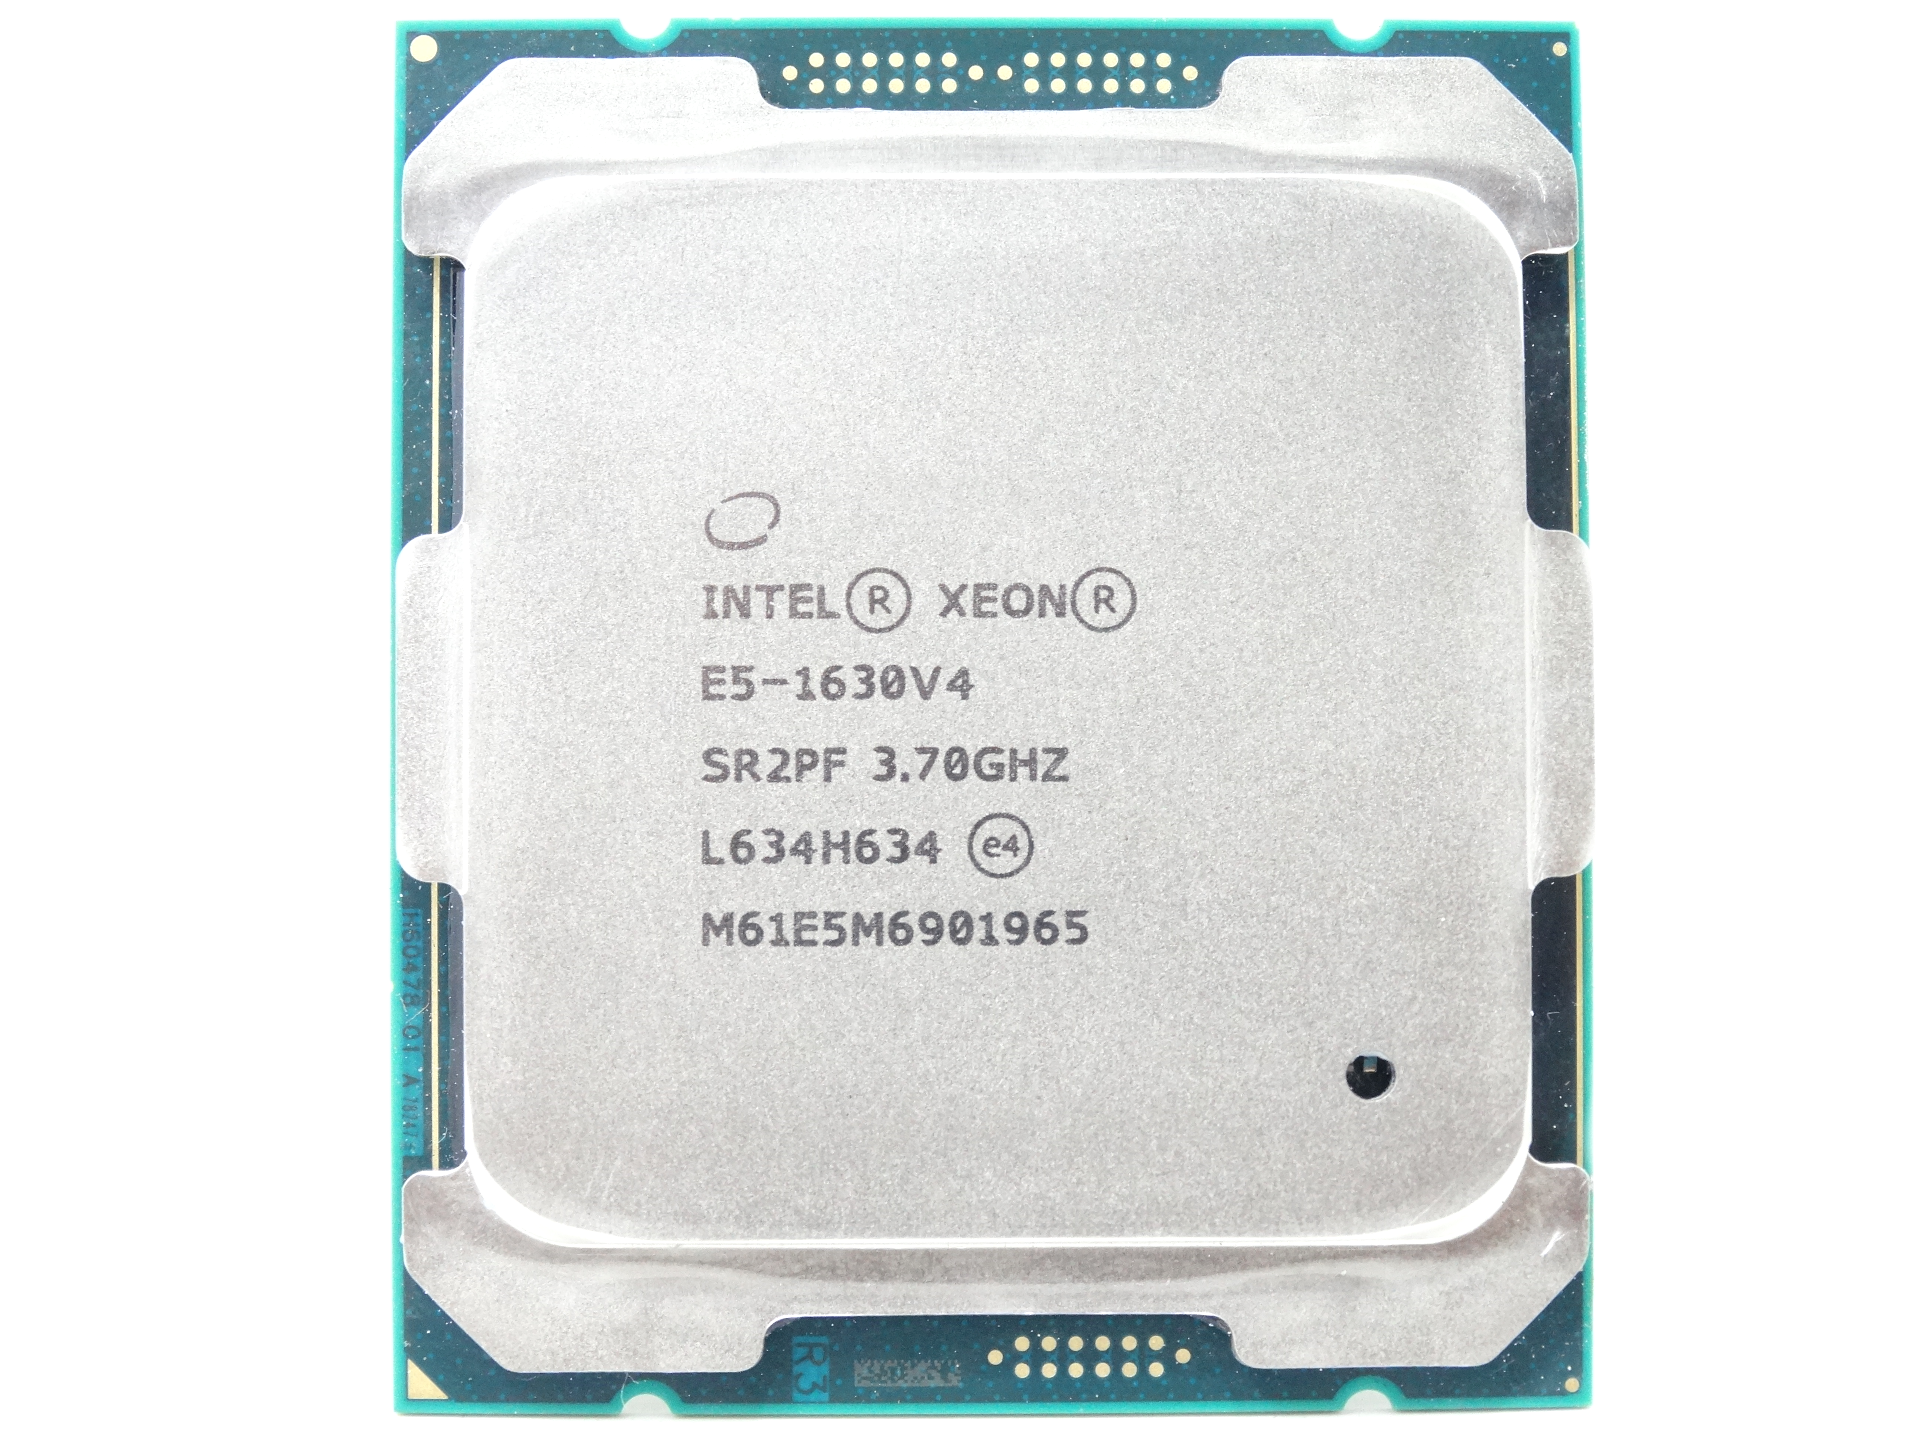 Intel Xeon E5-1630v4 Quad Core 3.70GHz 5GT/s LGA2011-3 CPU Processor (Xeon E5-1630 v4)